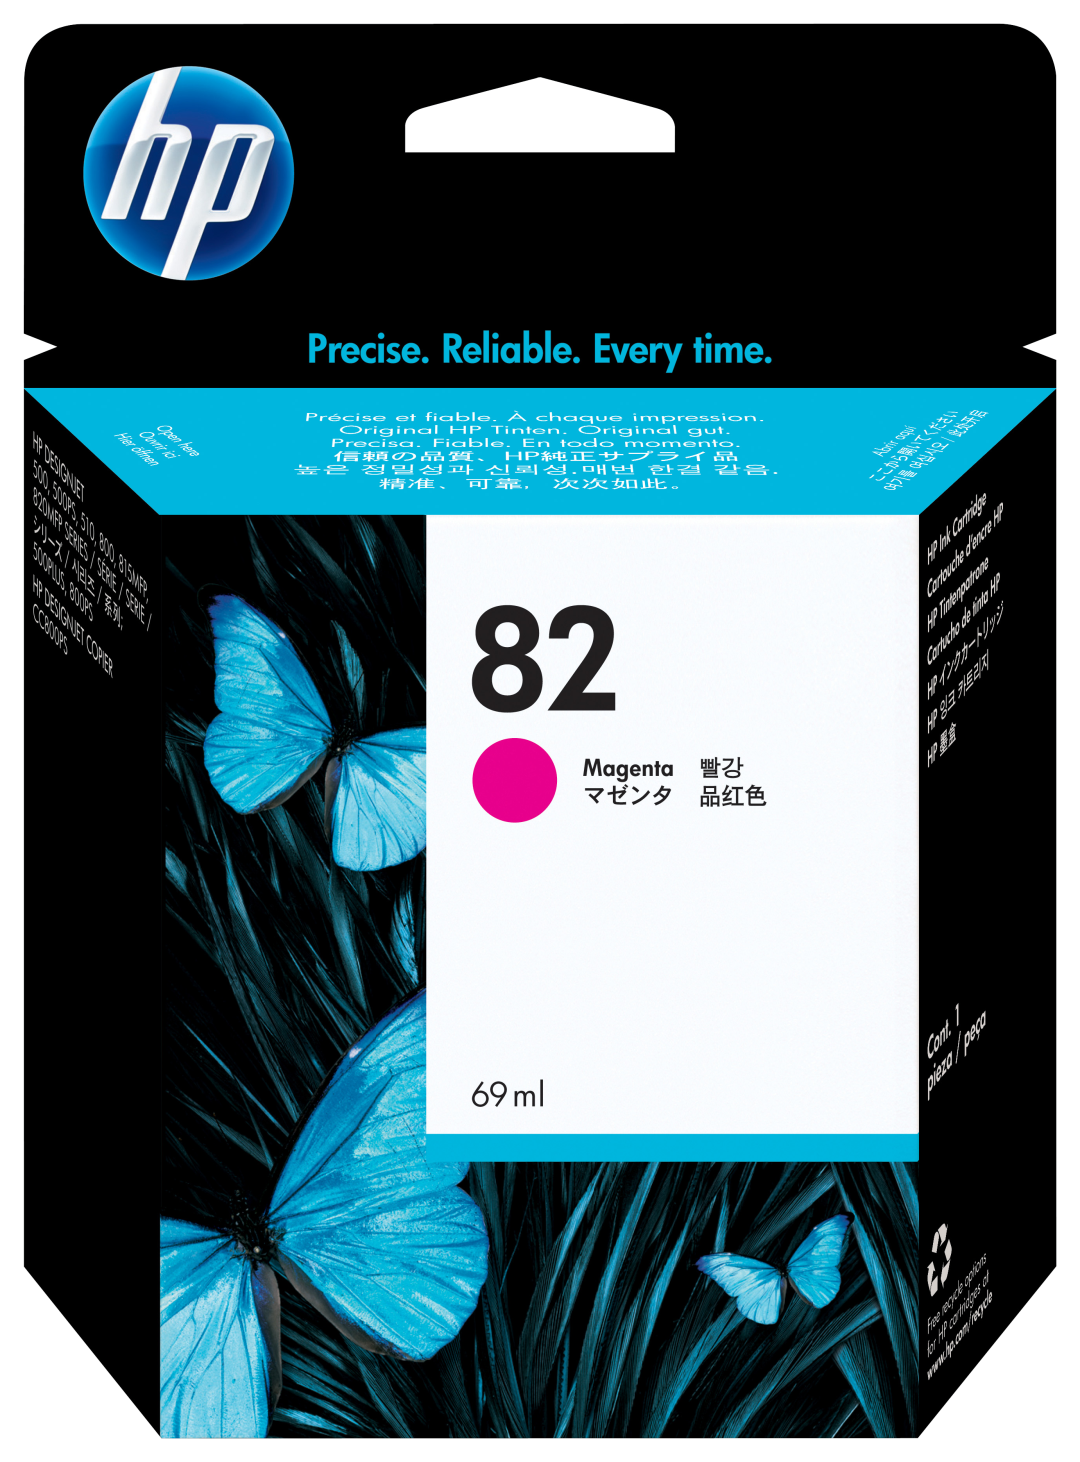 Картридж для печати HP Картридж HP 82 C4912A вид печати струйный, цвет Пурпурный, емкость 69мл.